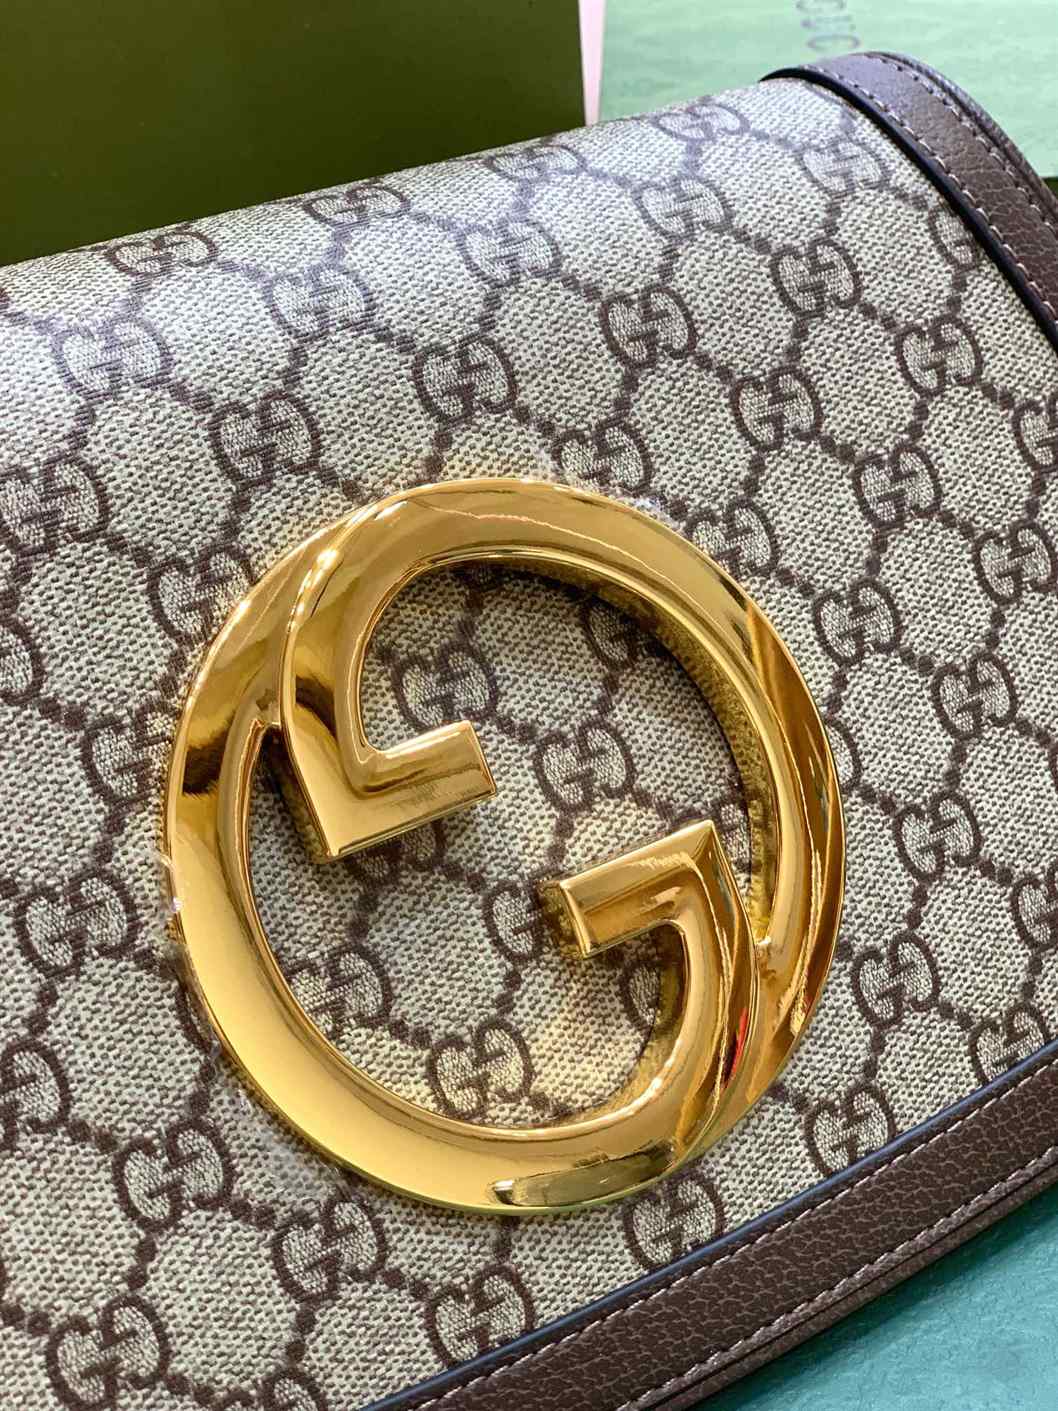 Gucci Blondie canvas bag replica